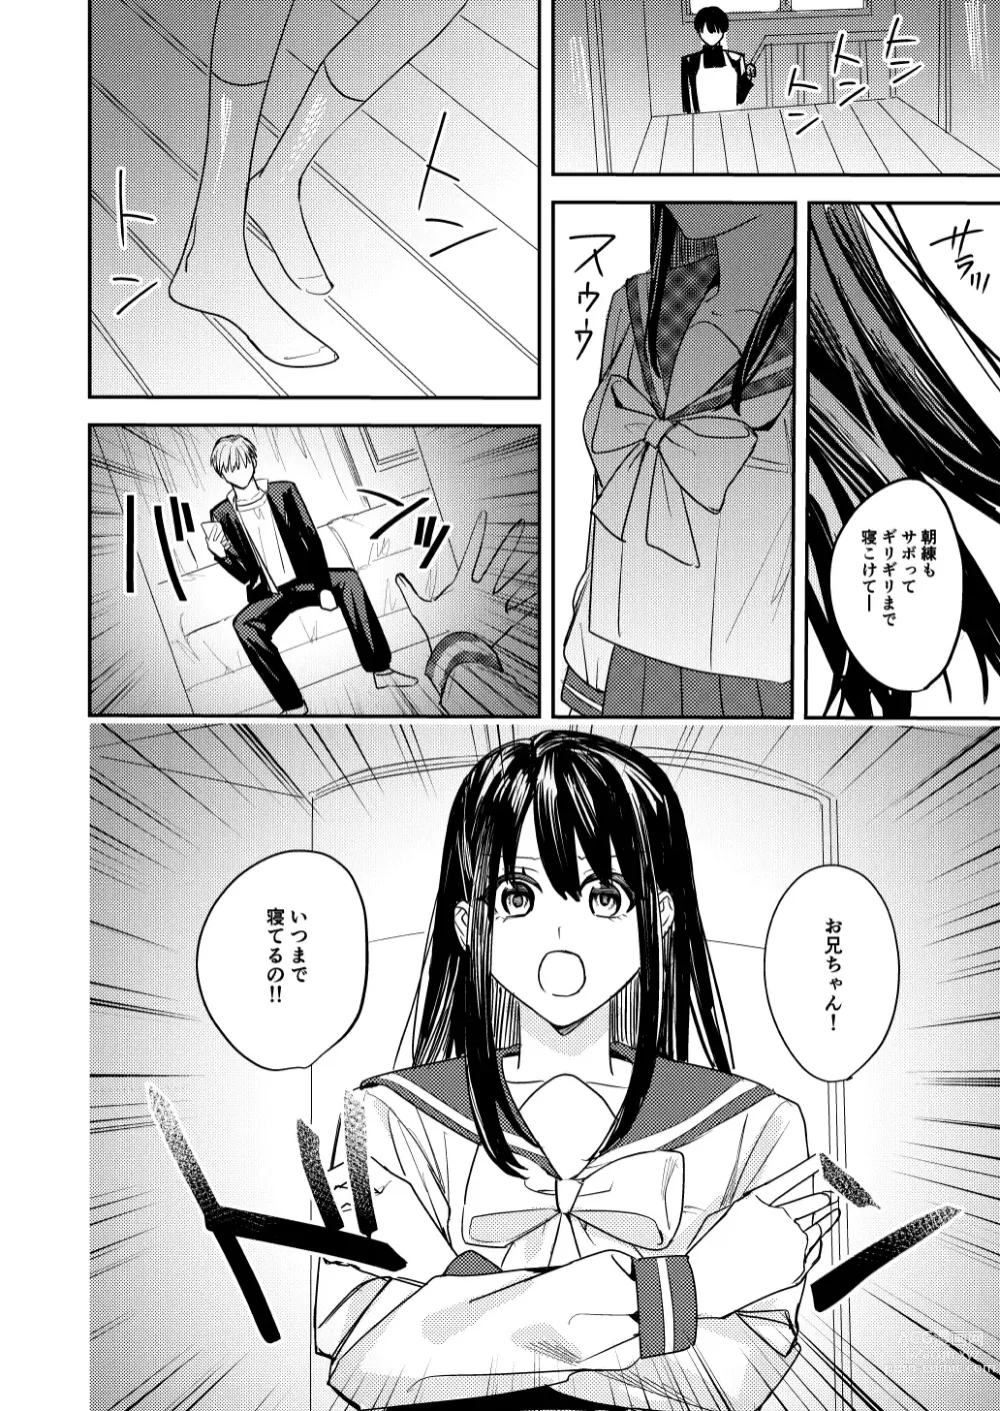 Page 6 of doujinshi Koitsura Minna Onnanoko nara Yoinoni